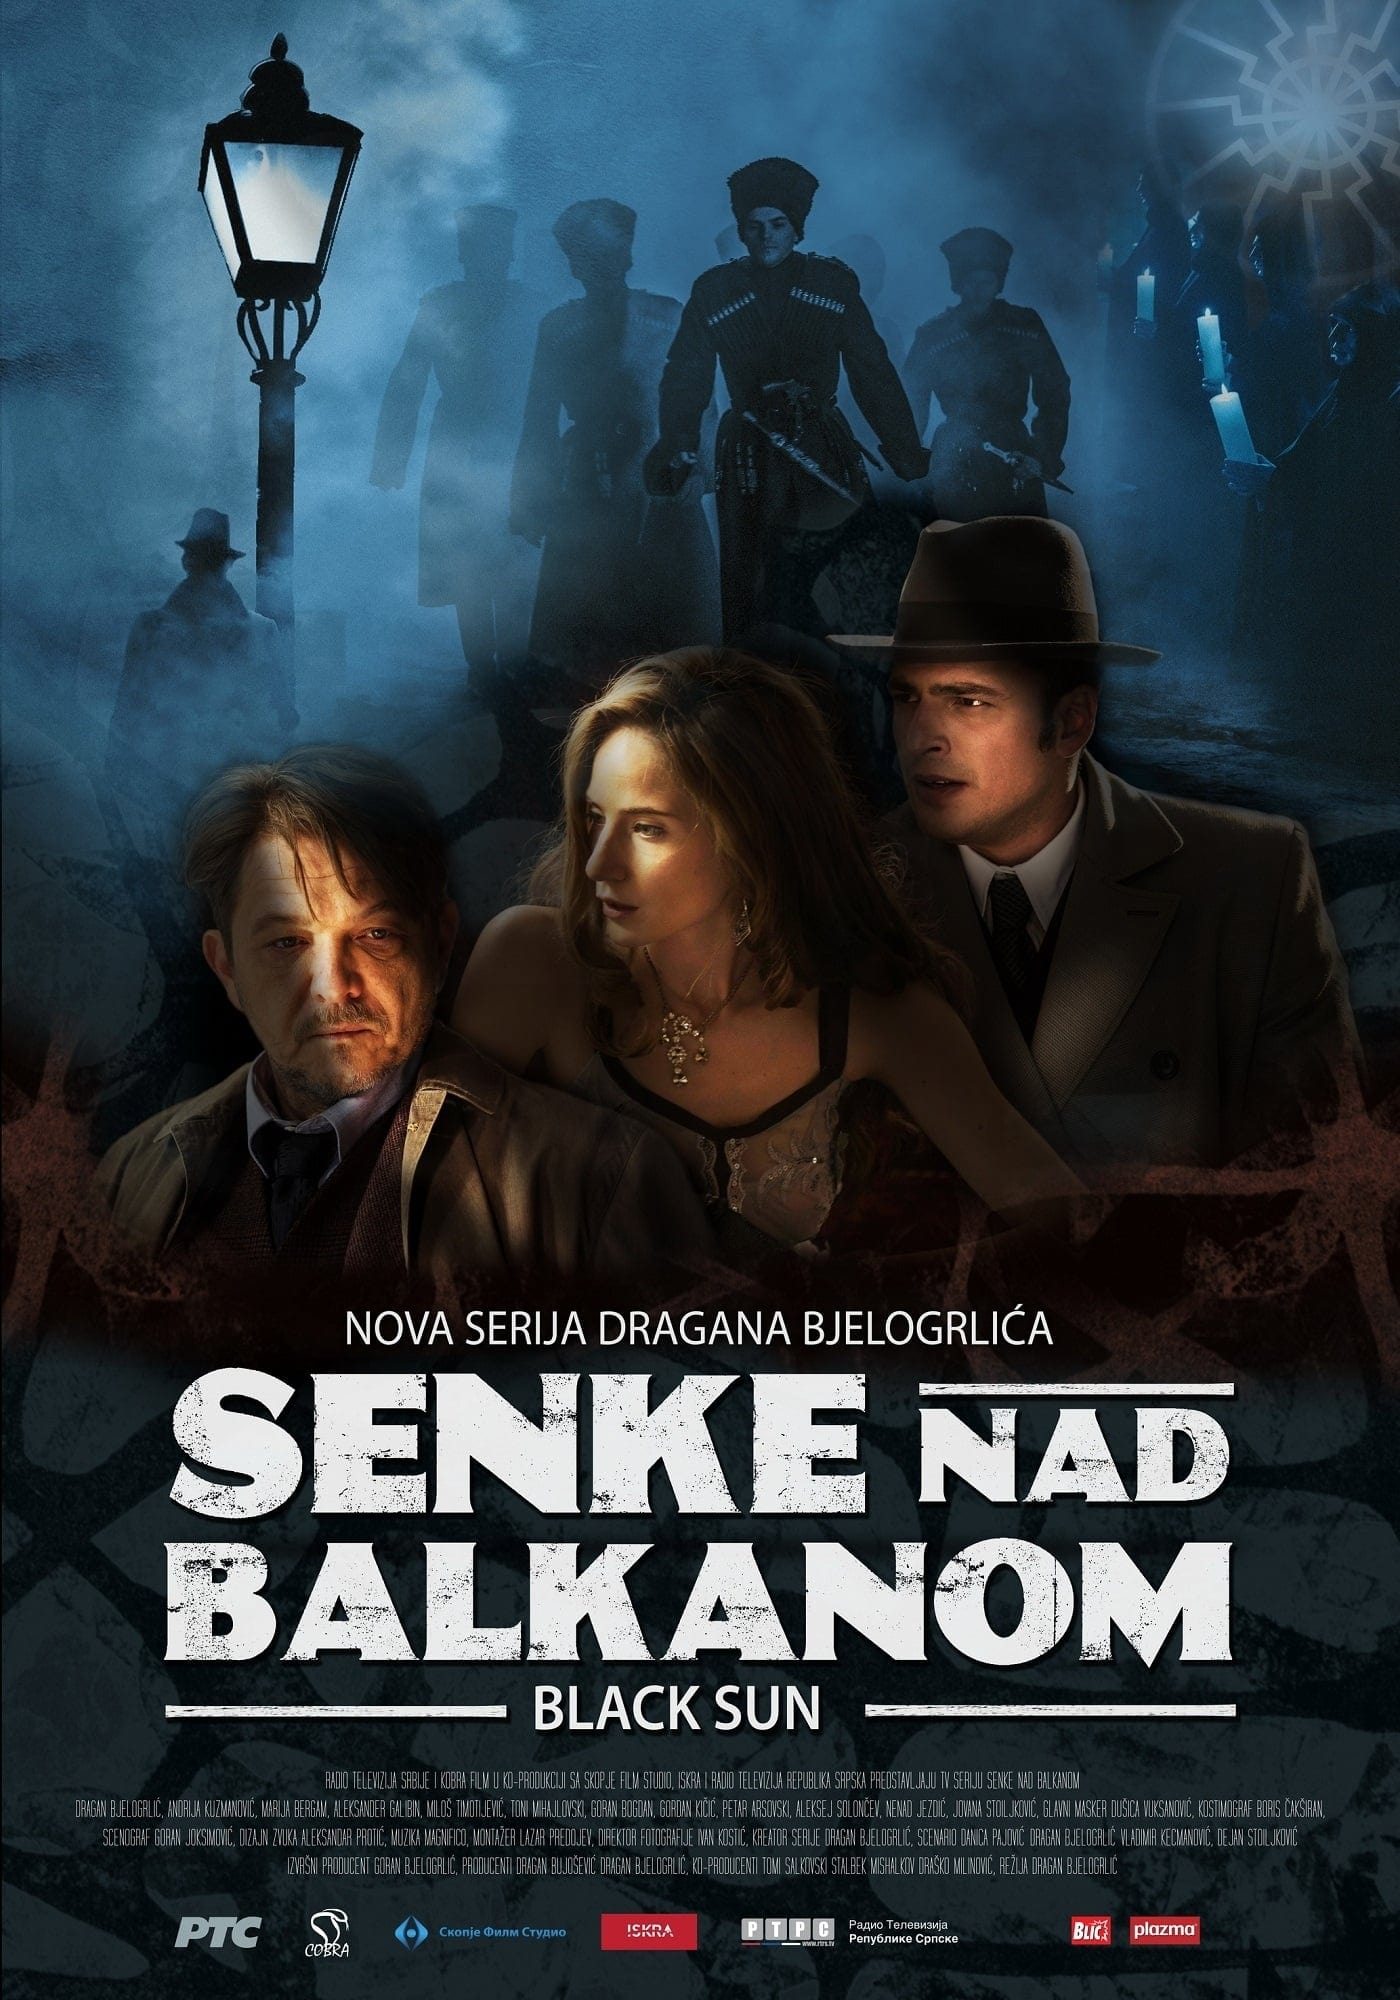 Shadows over Balkans (2017)